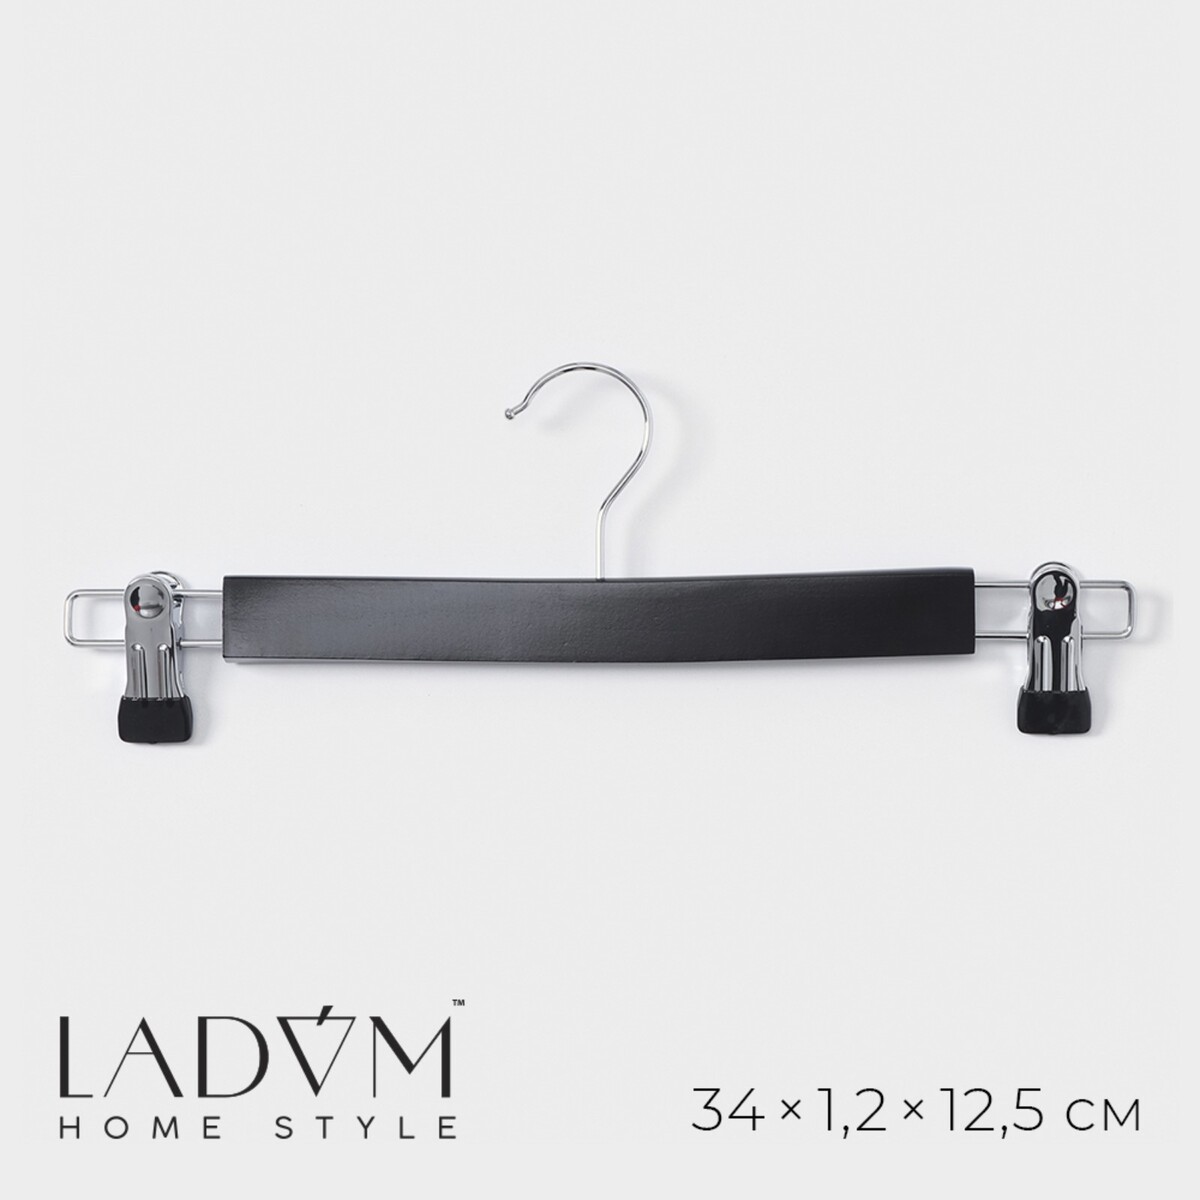 Вешалка для брюк и юбок с зажимами ladо́m bois, 34×1,2×12,5 см, сорт а, цвет темное дерево